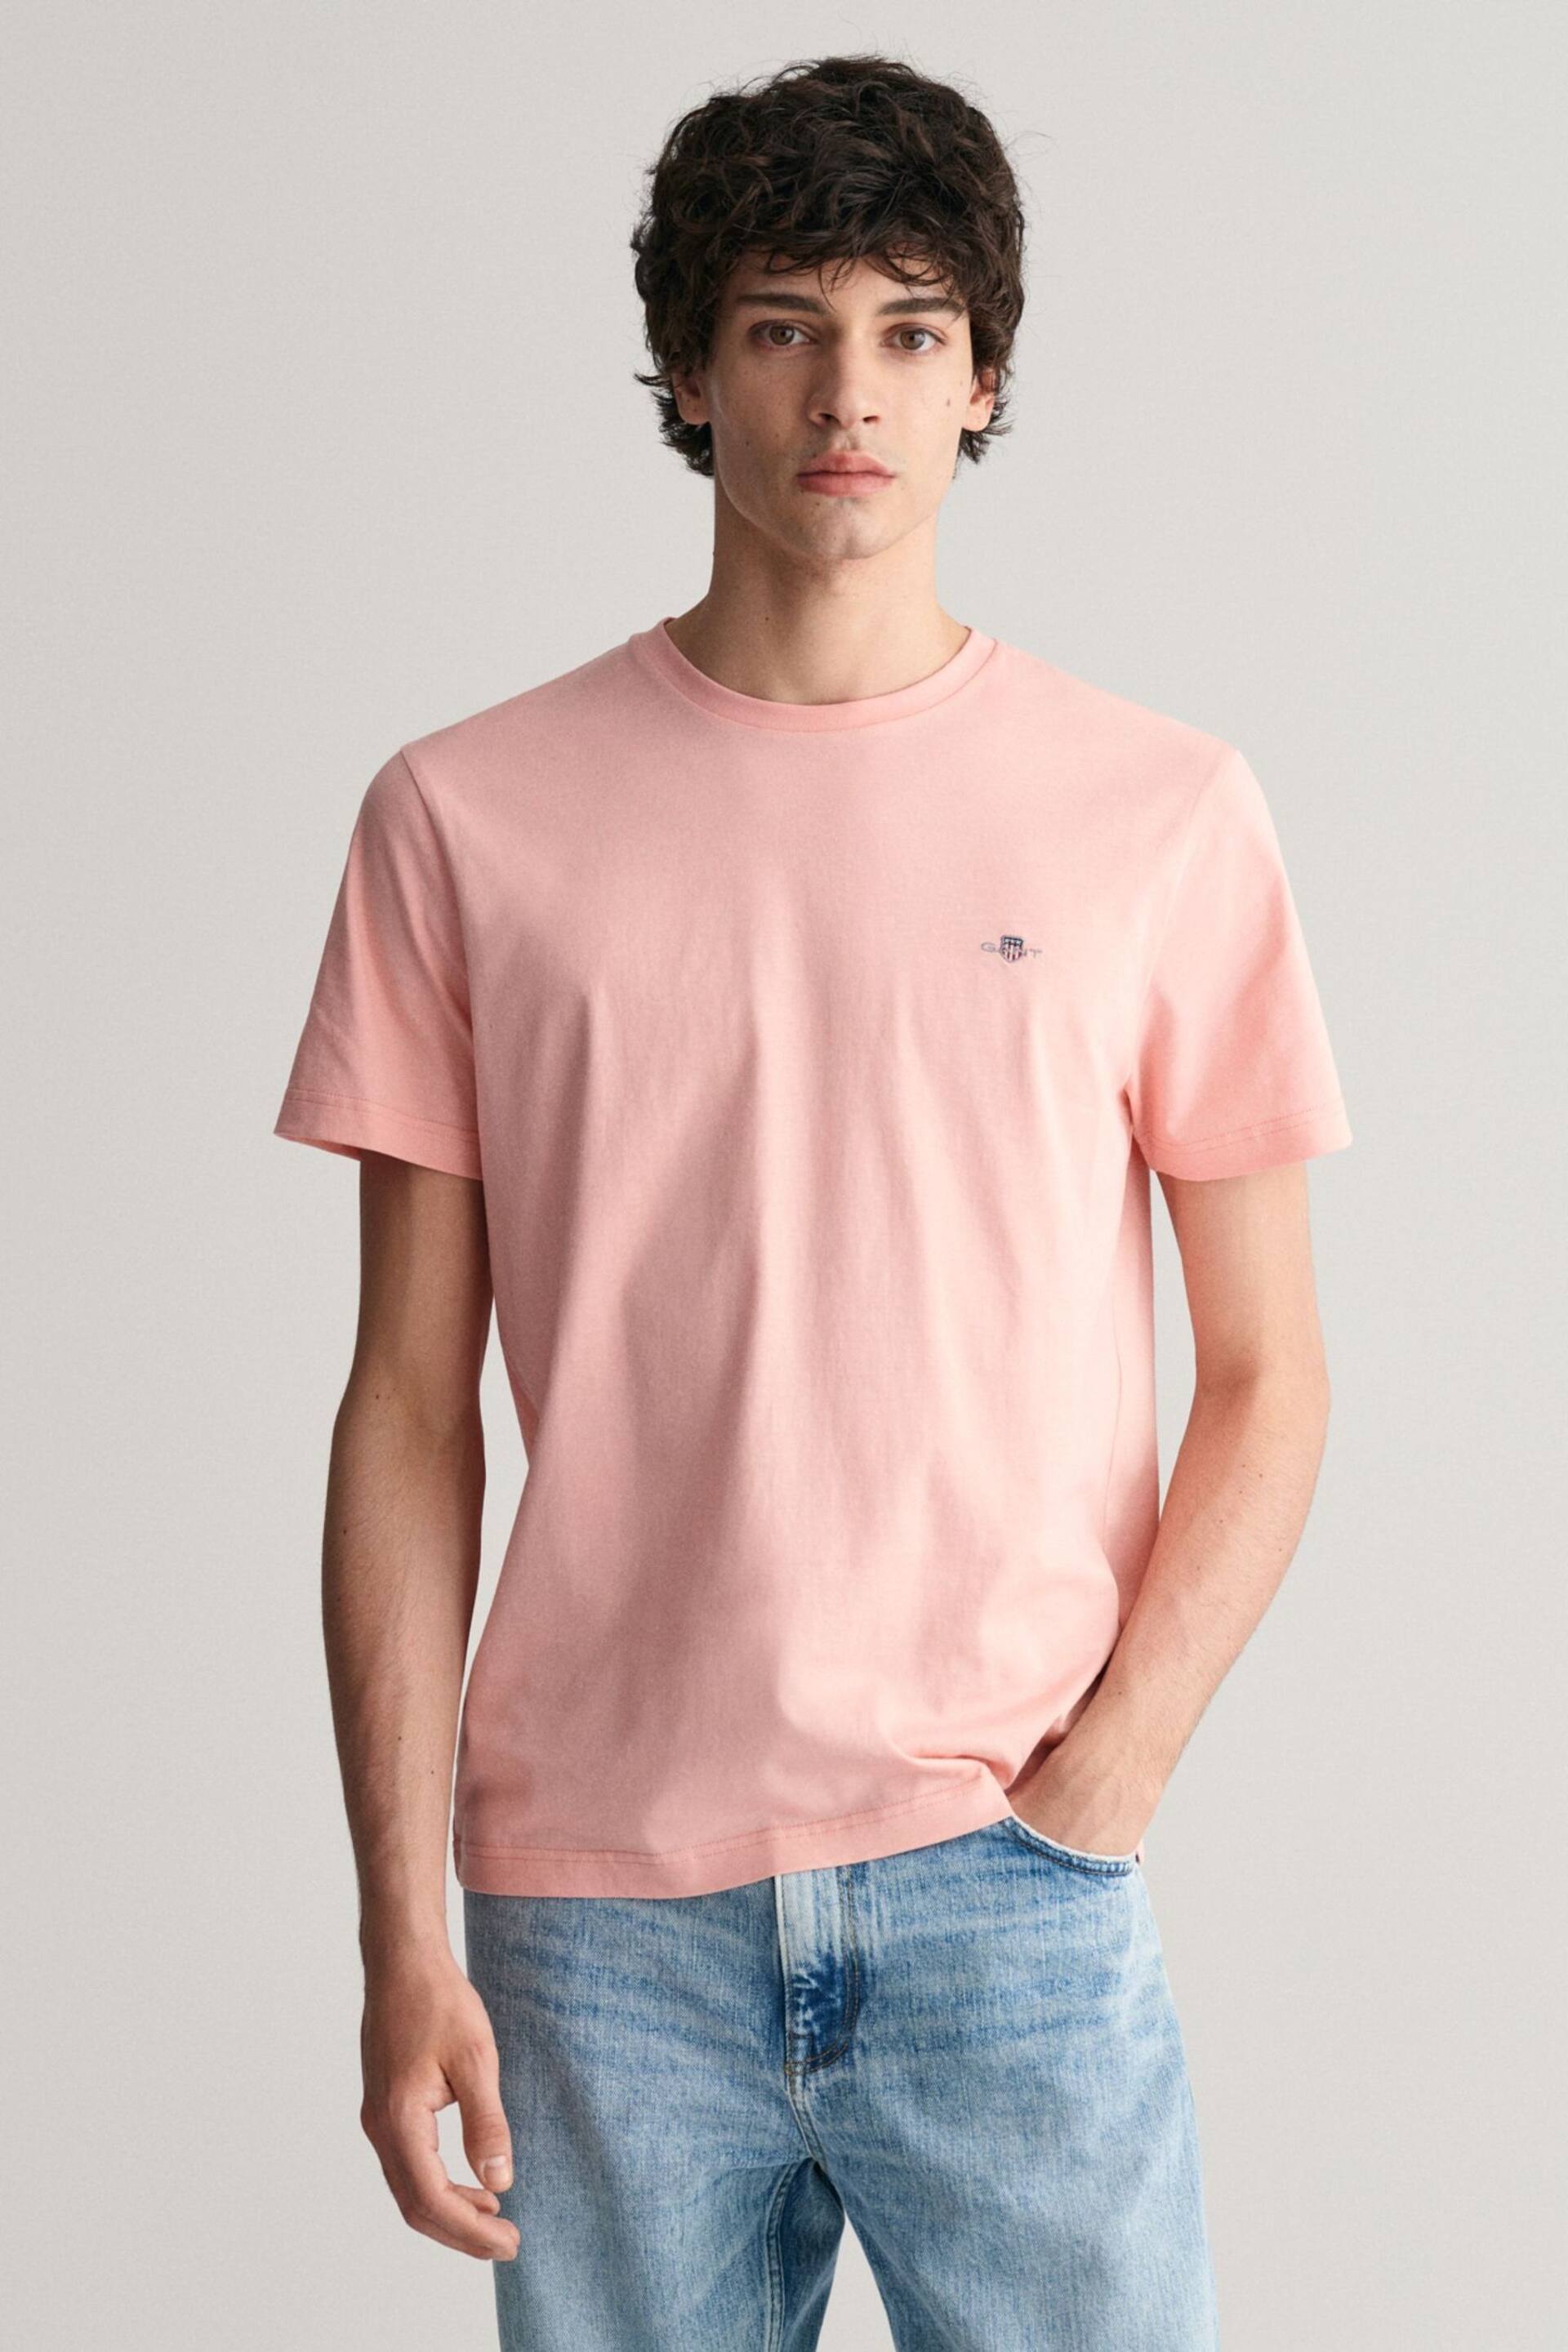 GANT Pink Shield Logo T-Shirt - Image 1 of 5